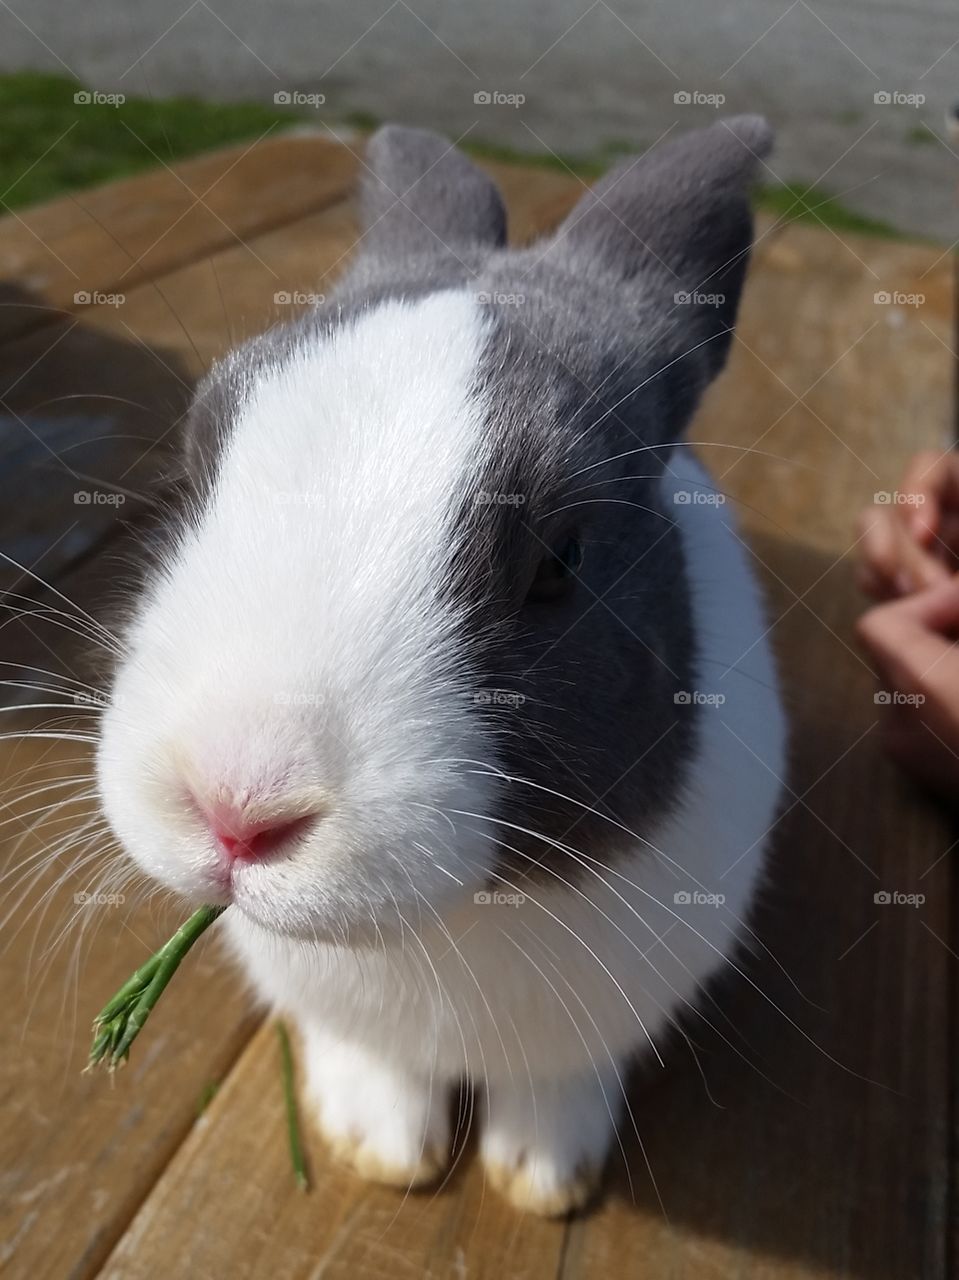 bunny snacks